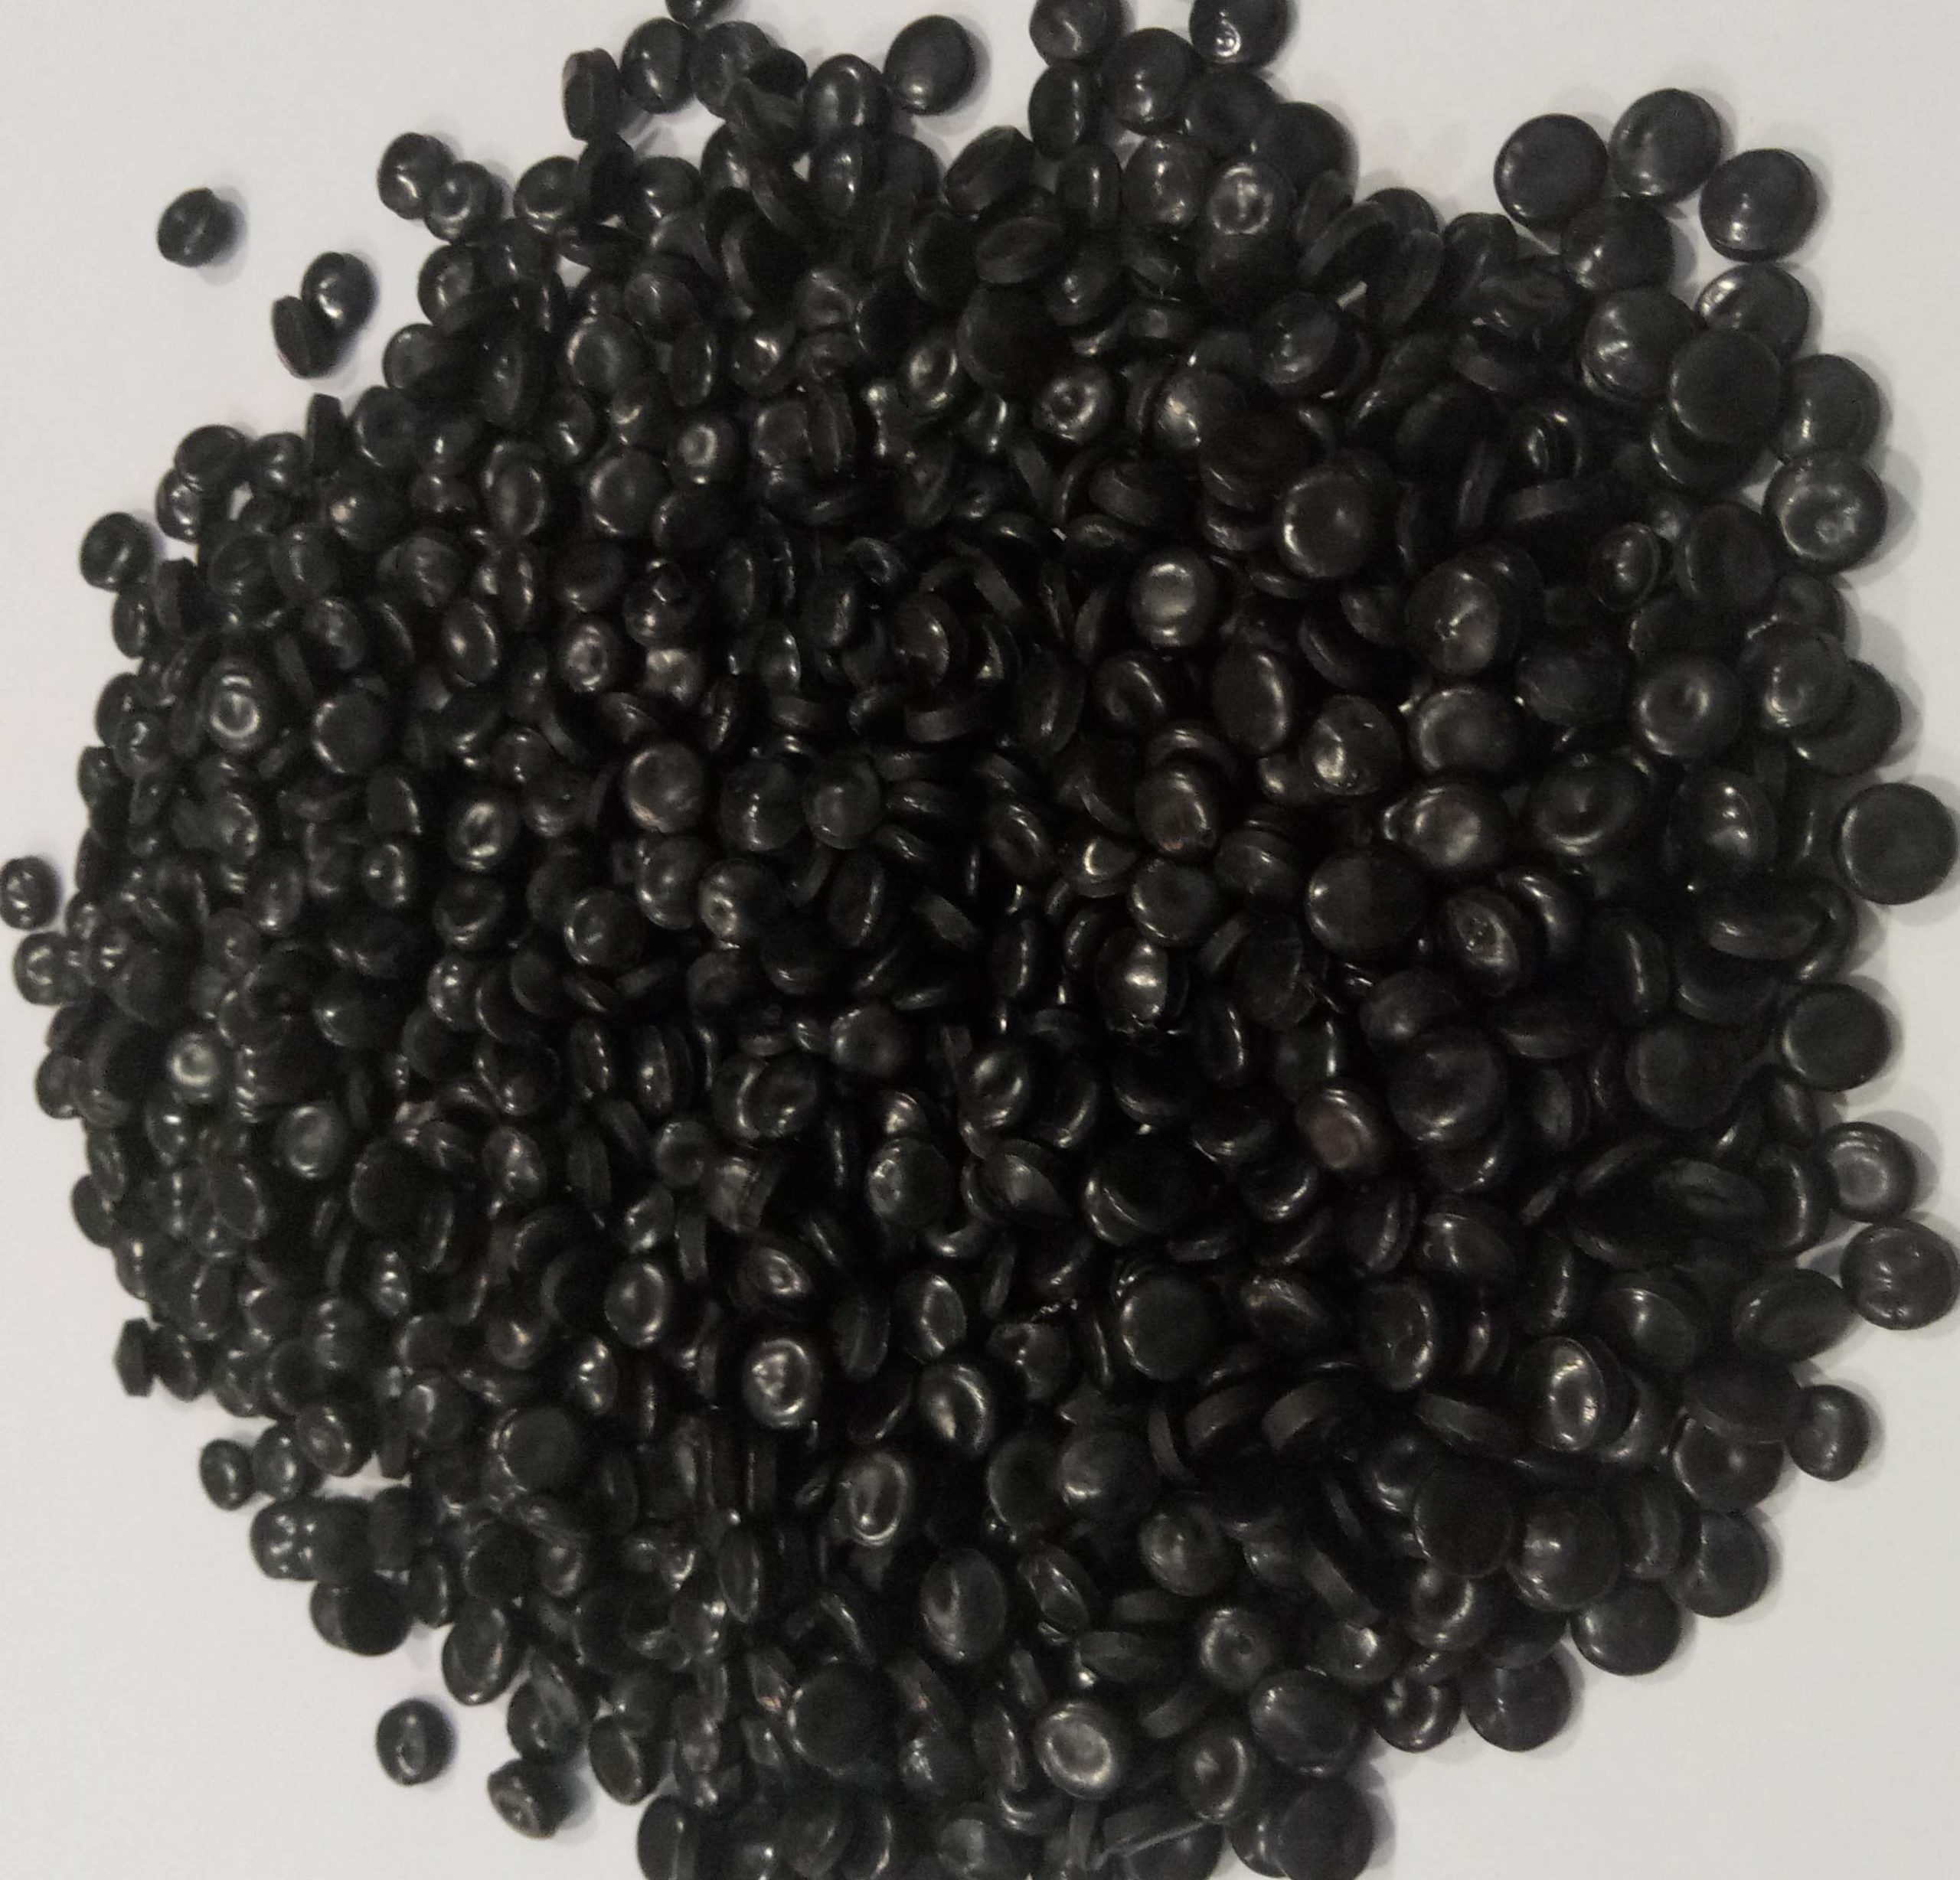 HDPE pellet - black color